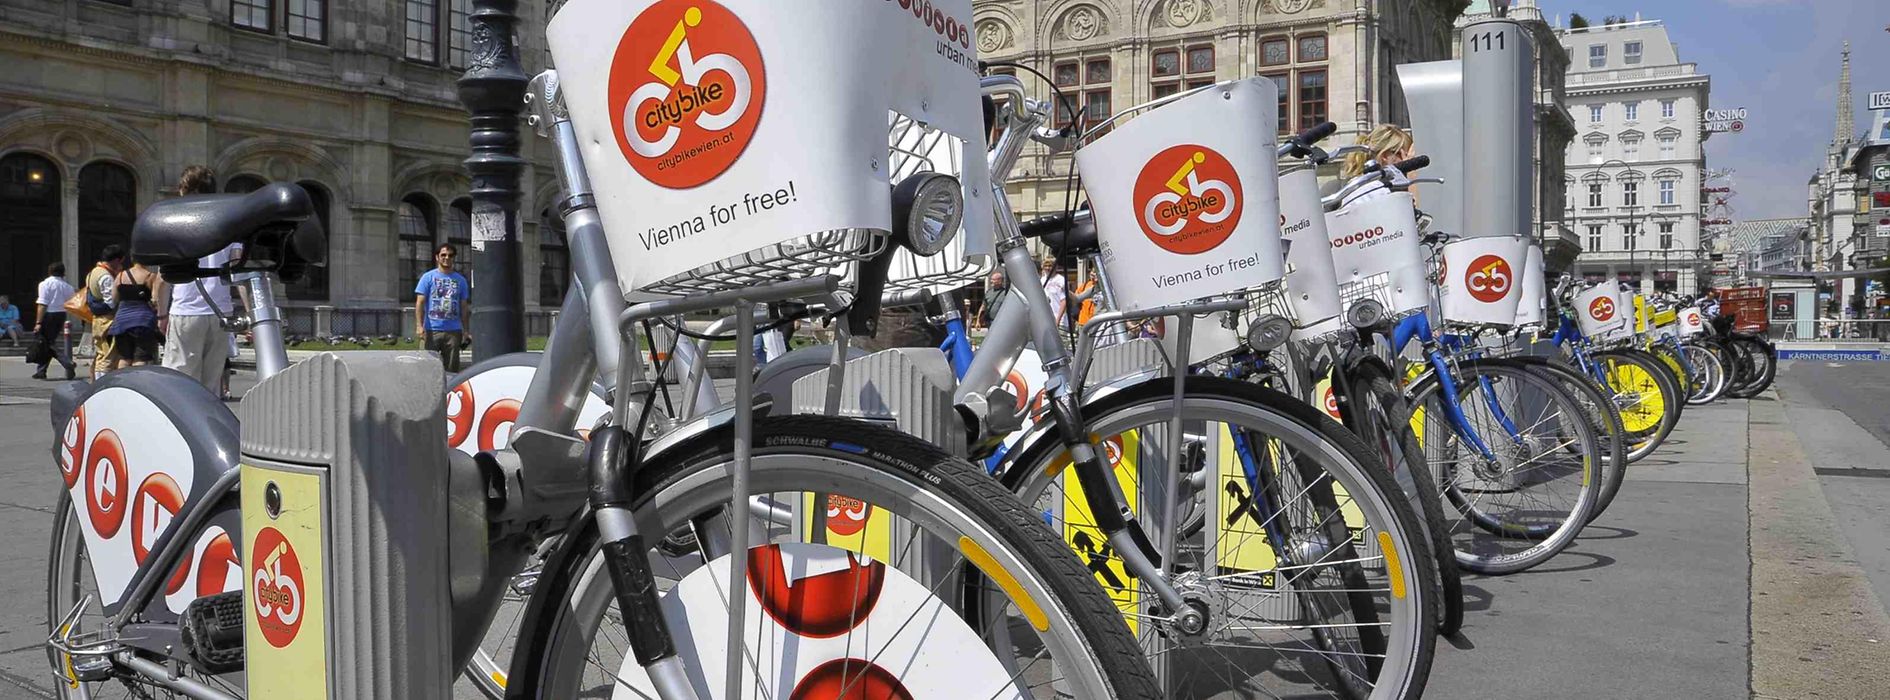 Un Citybike devant l'Opéra national de Vienne